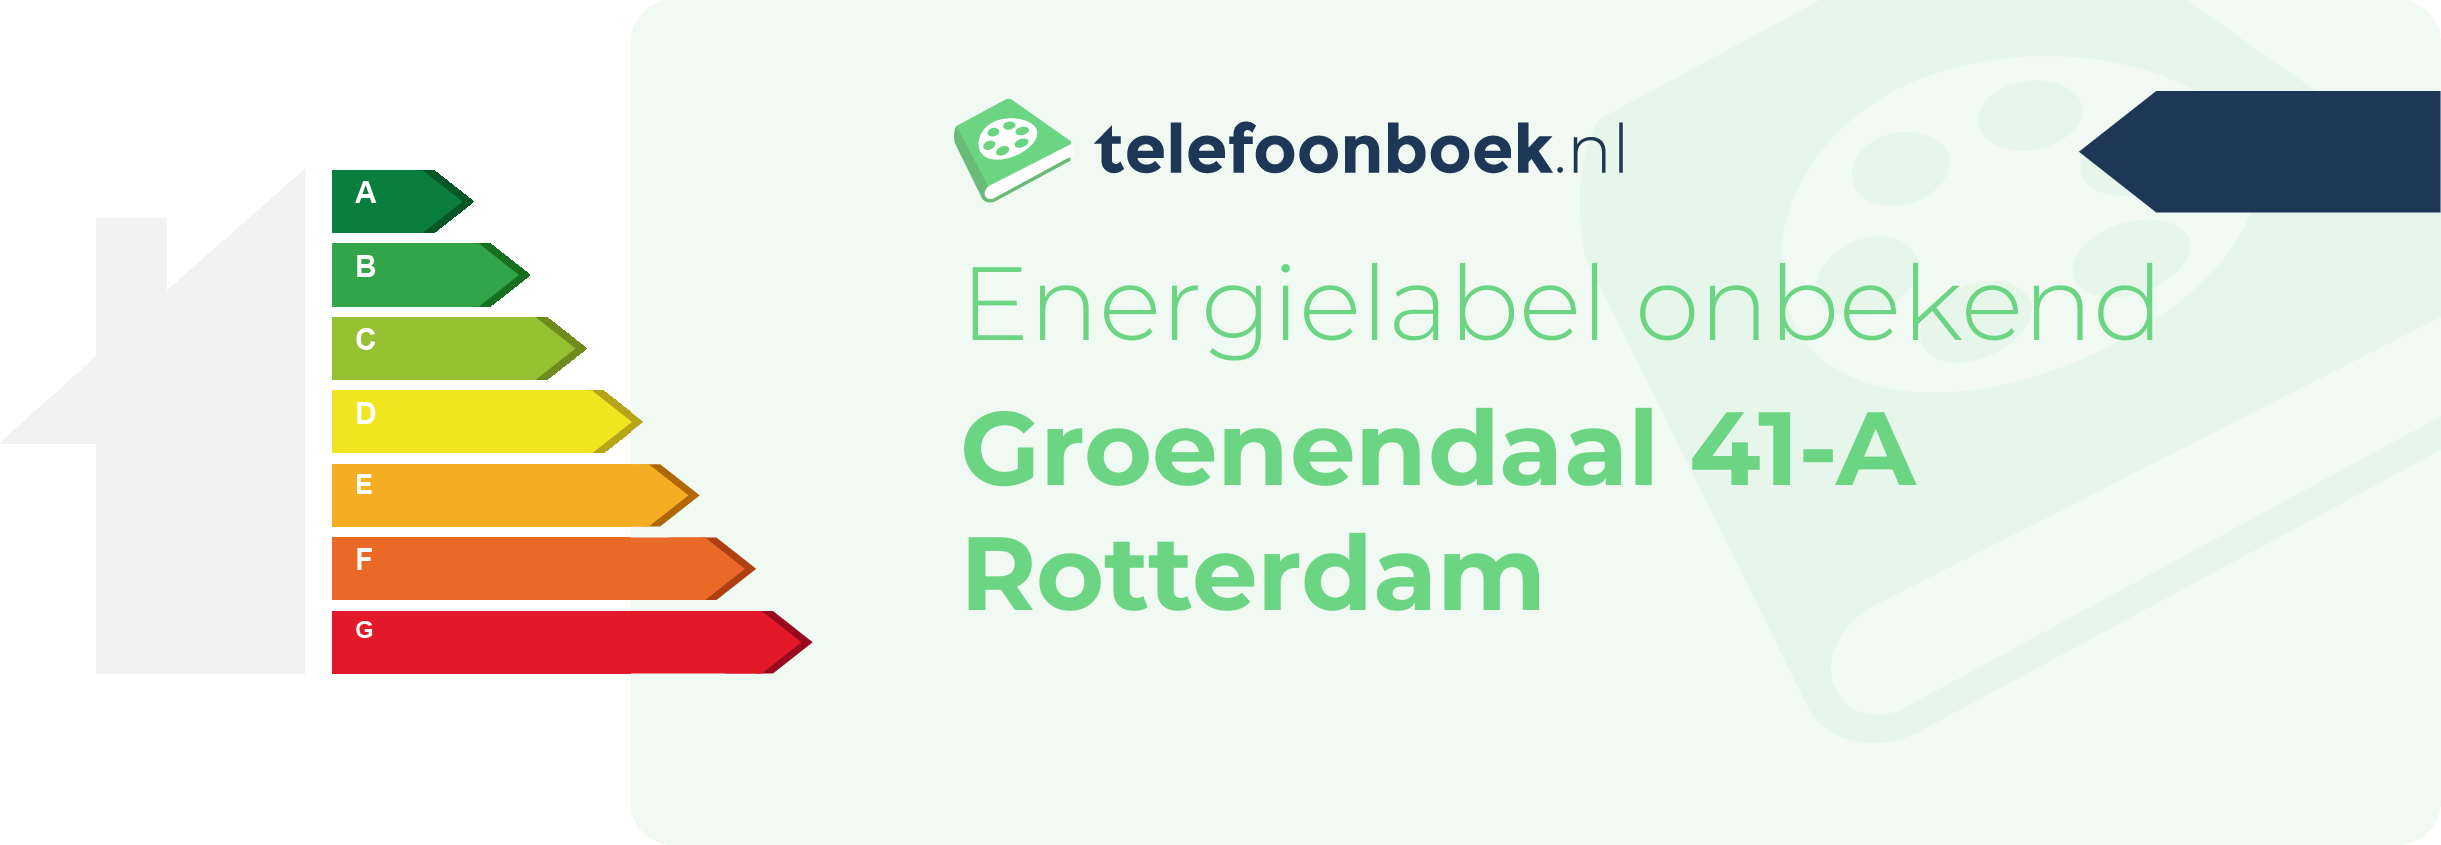 Energielabel Groenendaal 41-A Rotterdam